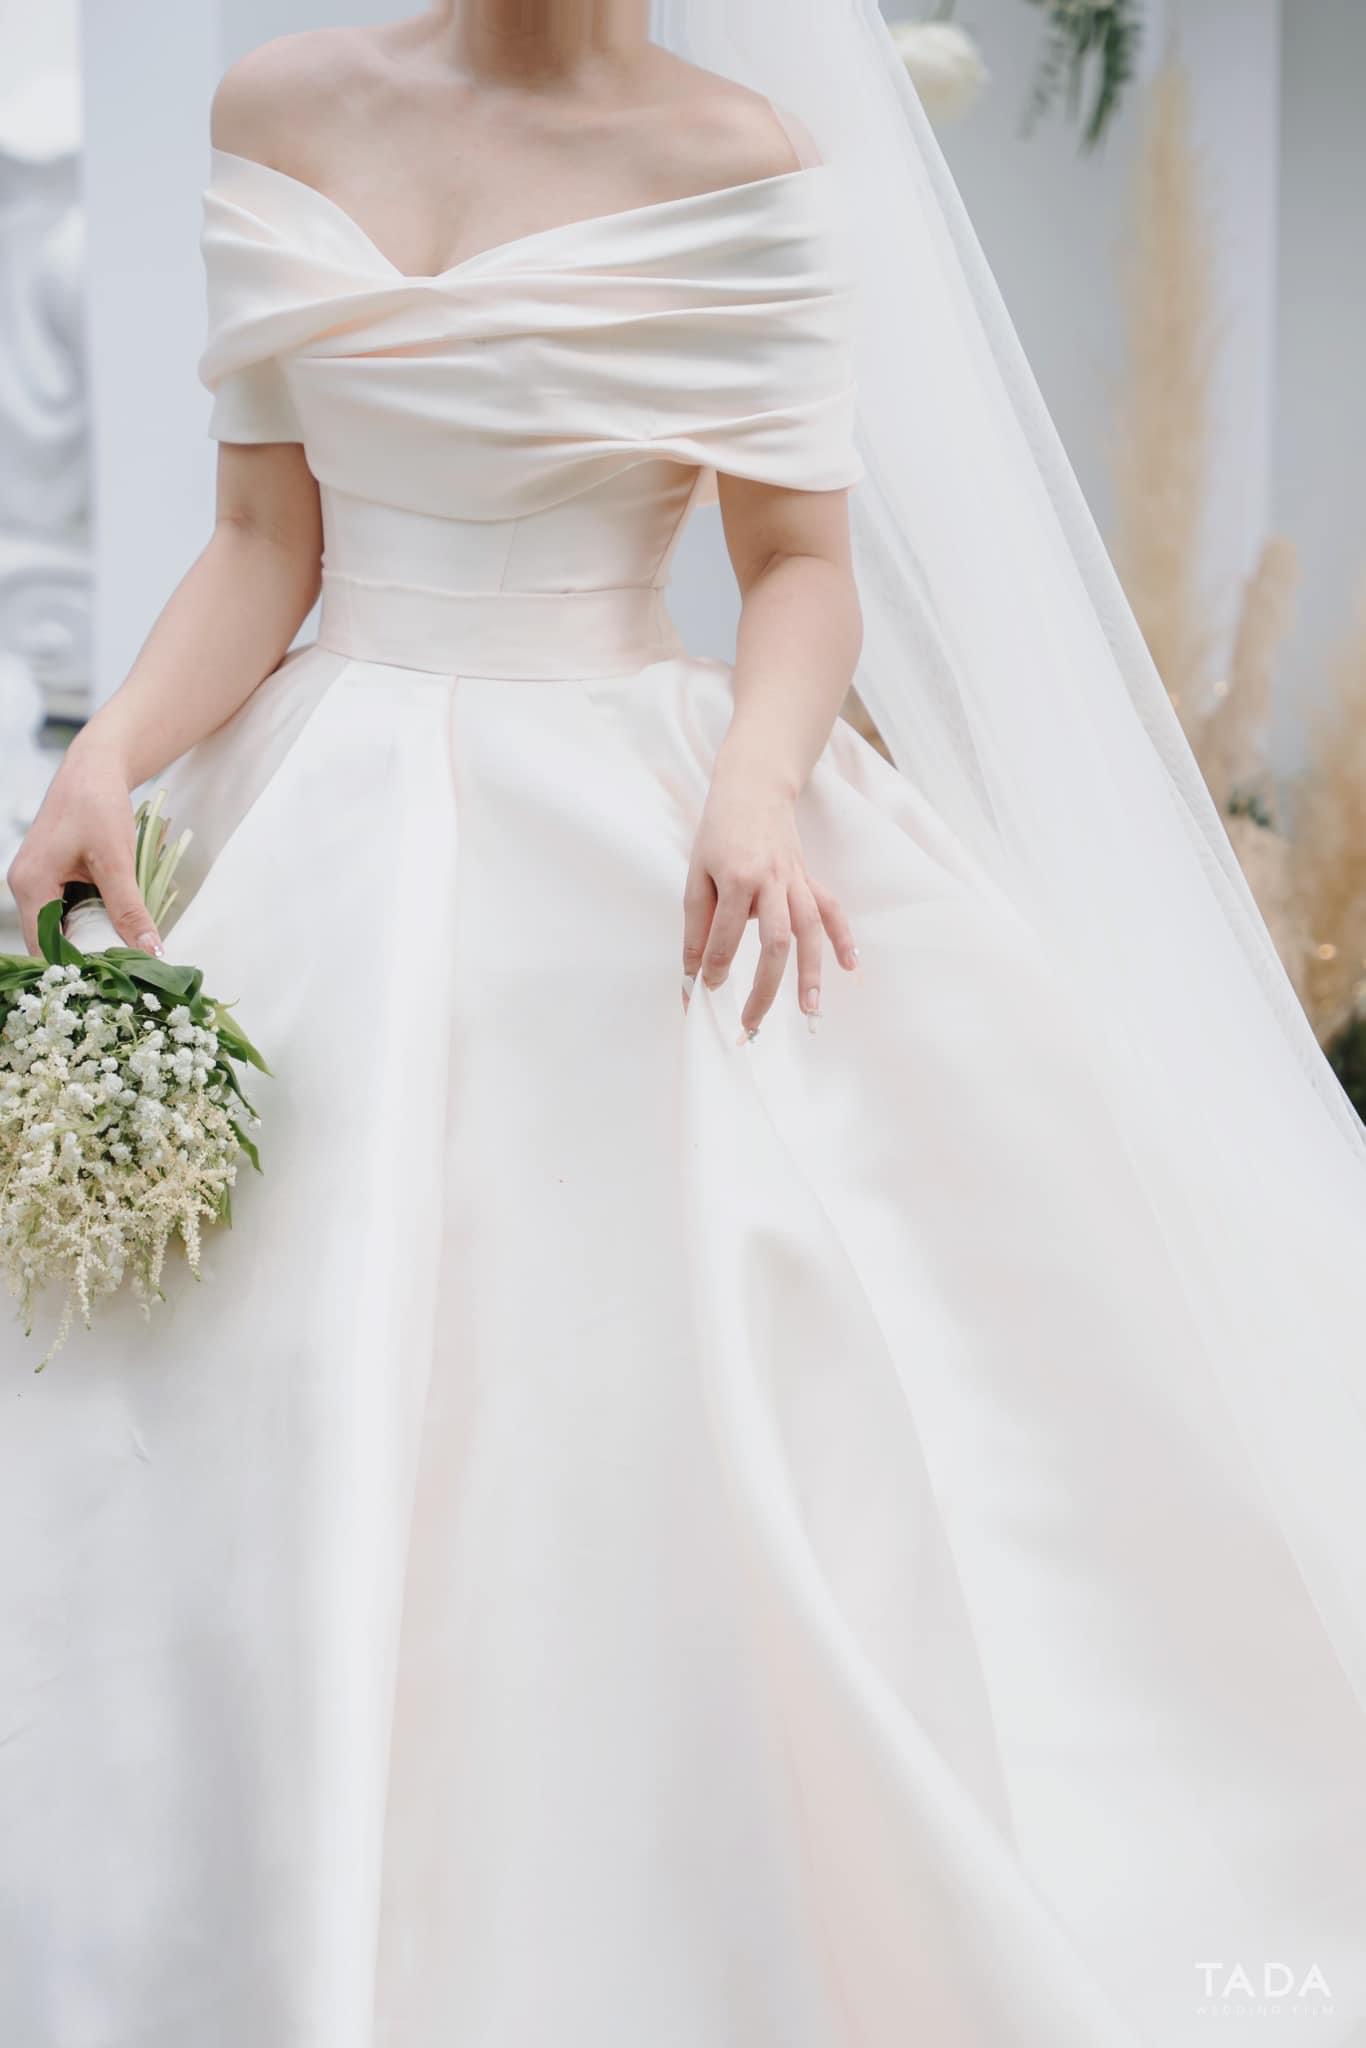 10 mẫu thiết kế váy đẹp cho cô dâu năm 2020 - 2021 | Quyên Nguyễn